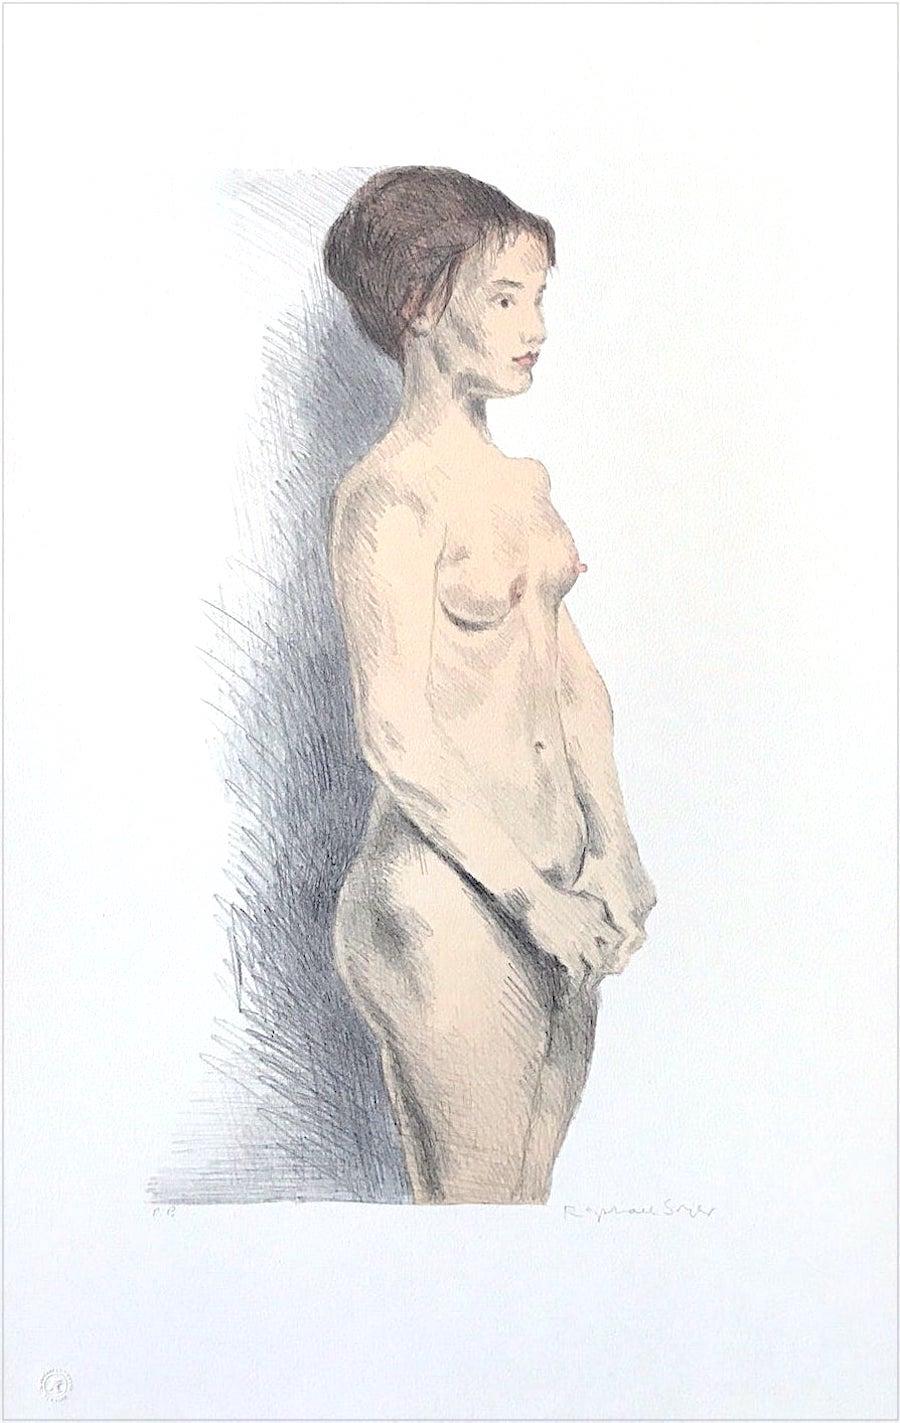 STANDING NUDE Signierte Lithographie, Realismus-Porträt einer jungen Frau, Figurenzeichnung